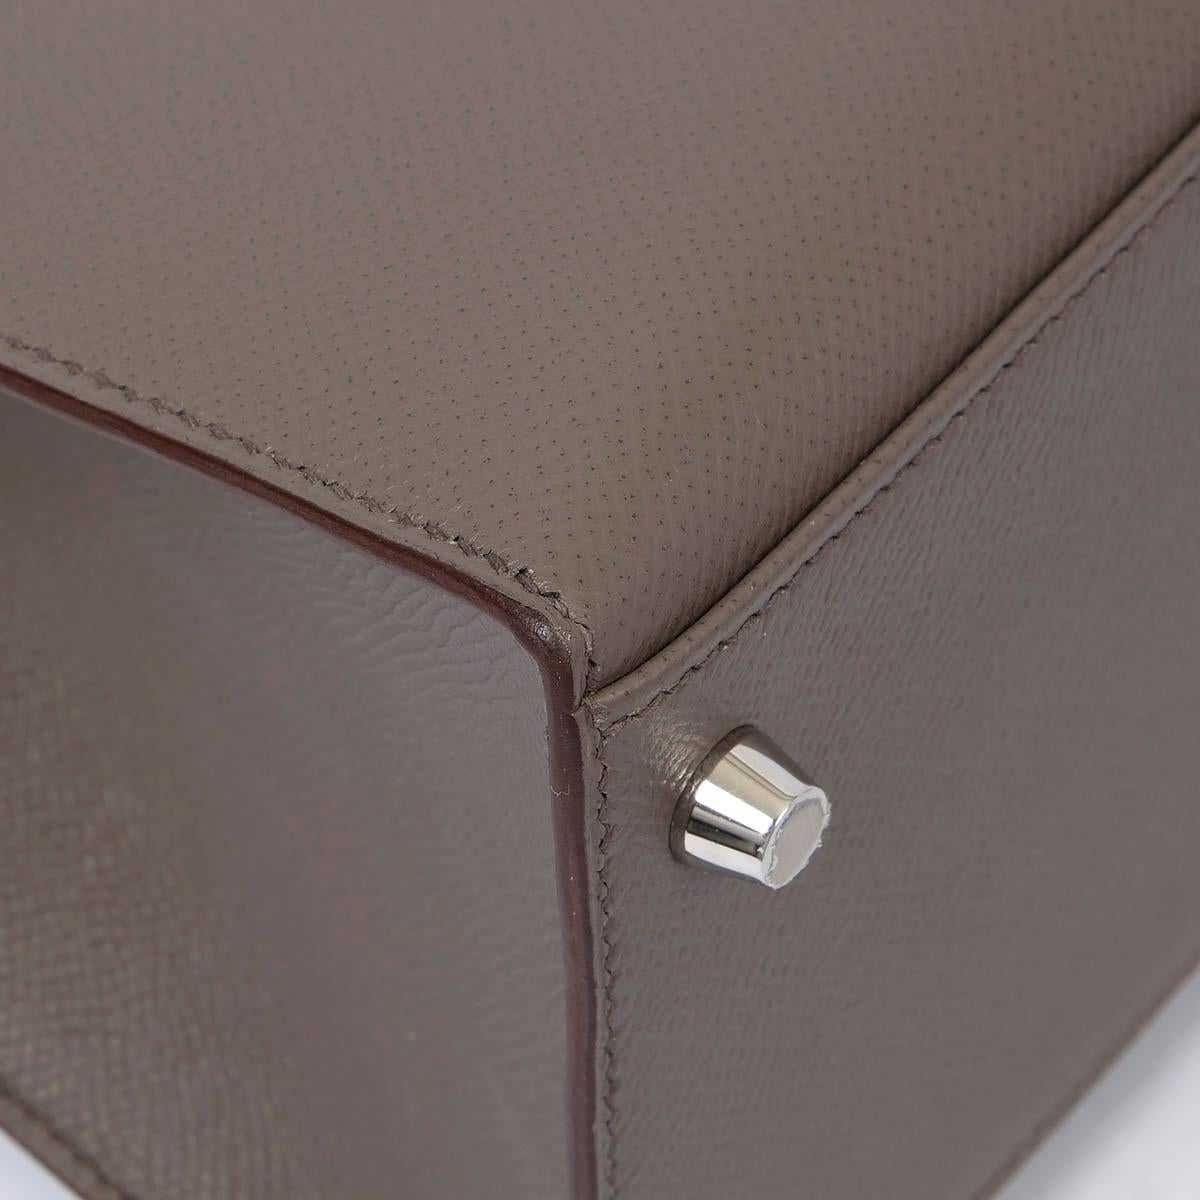 HERMES Etain grey Epsom leather KELLY 28 SELLIER Bag Phw 6